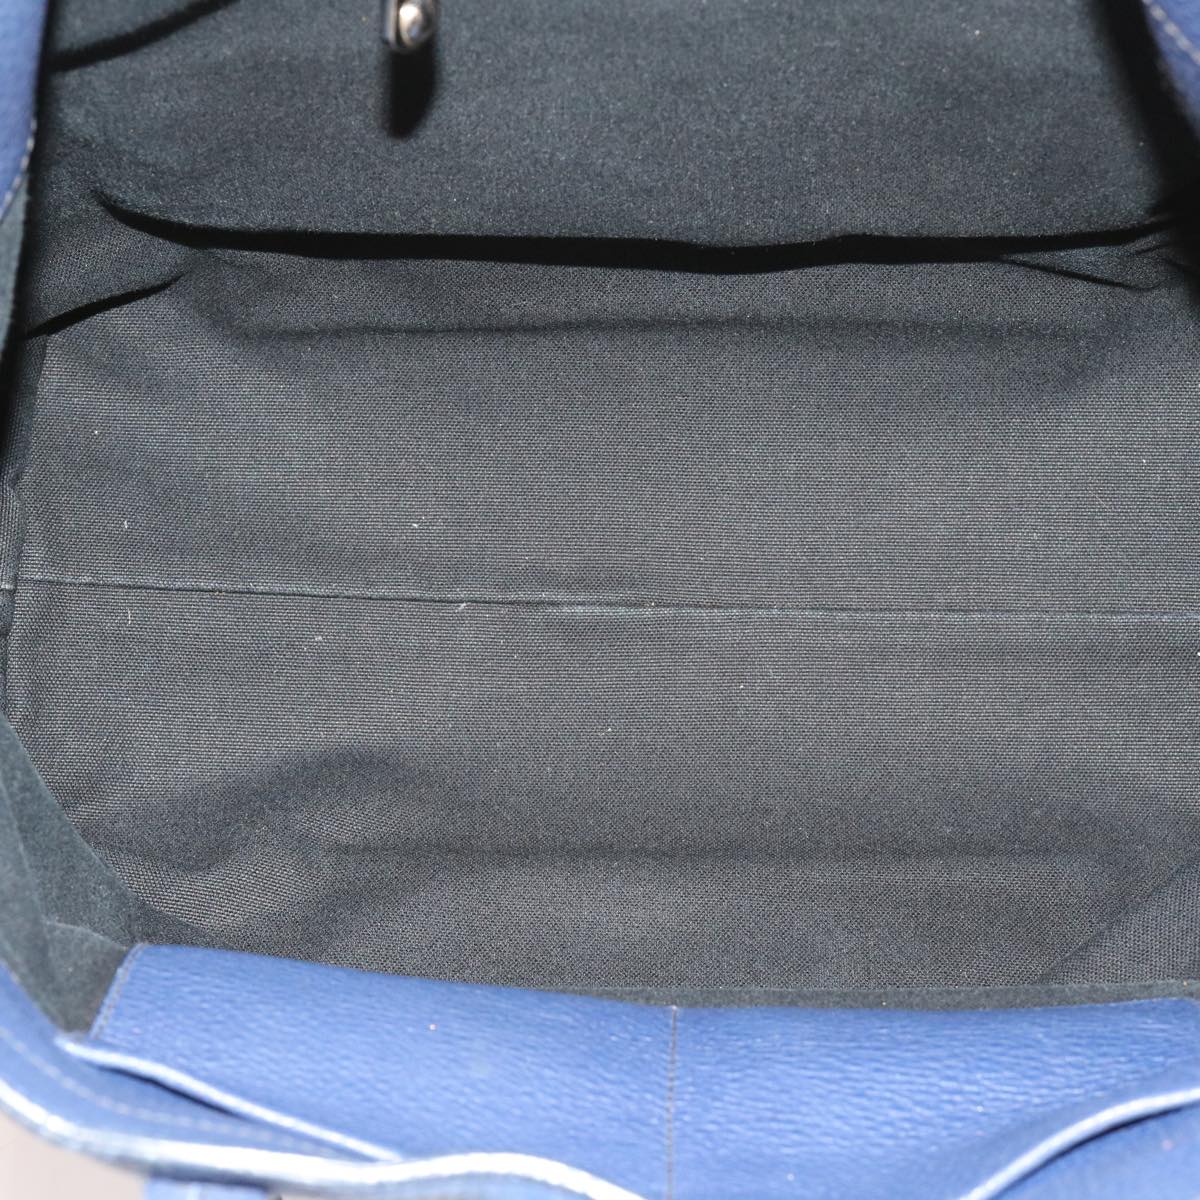 Miu Miu Tote Bag Leather Blue Auth 63446